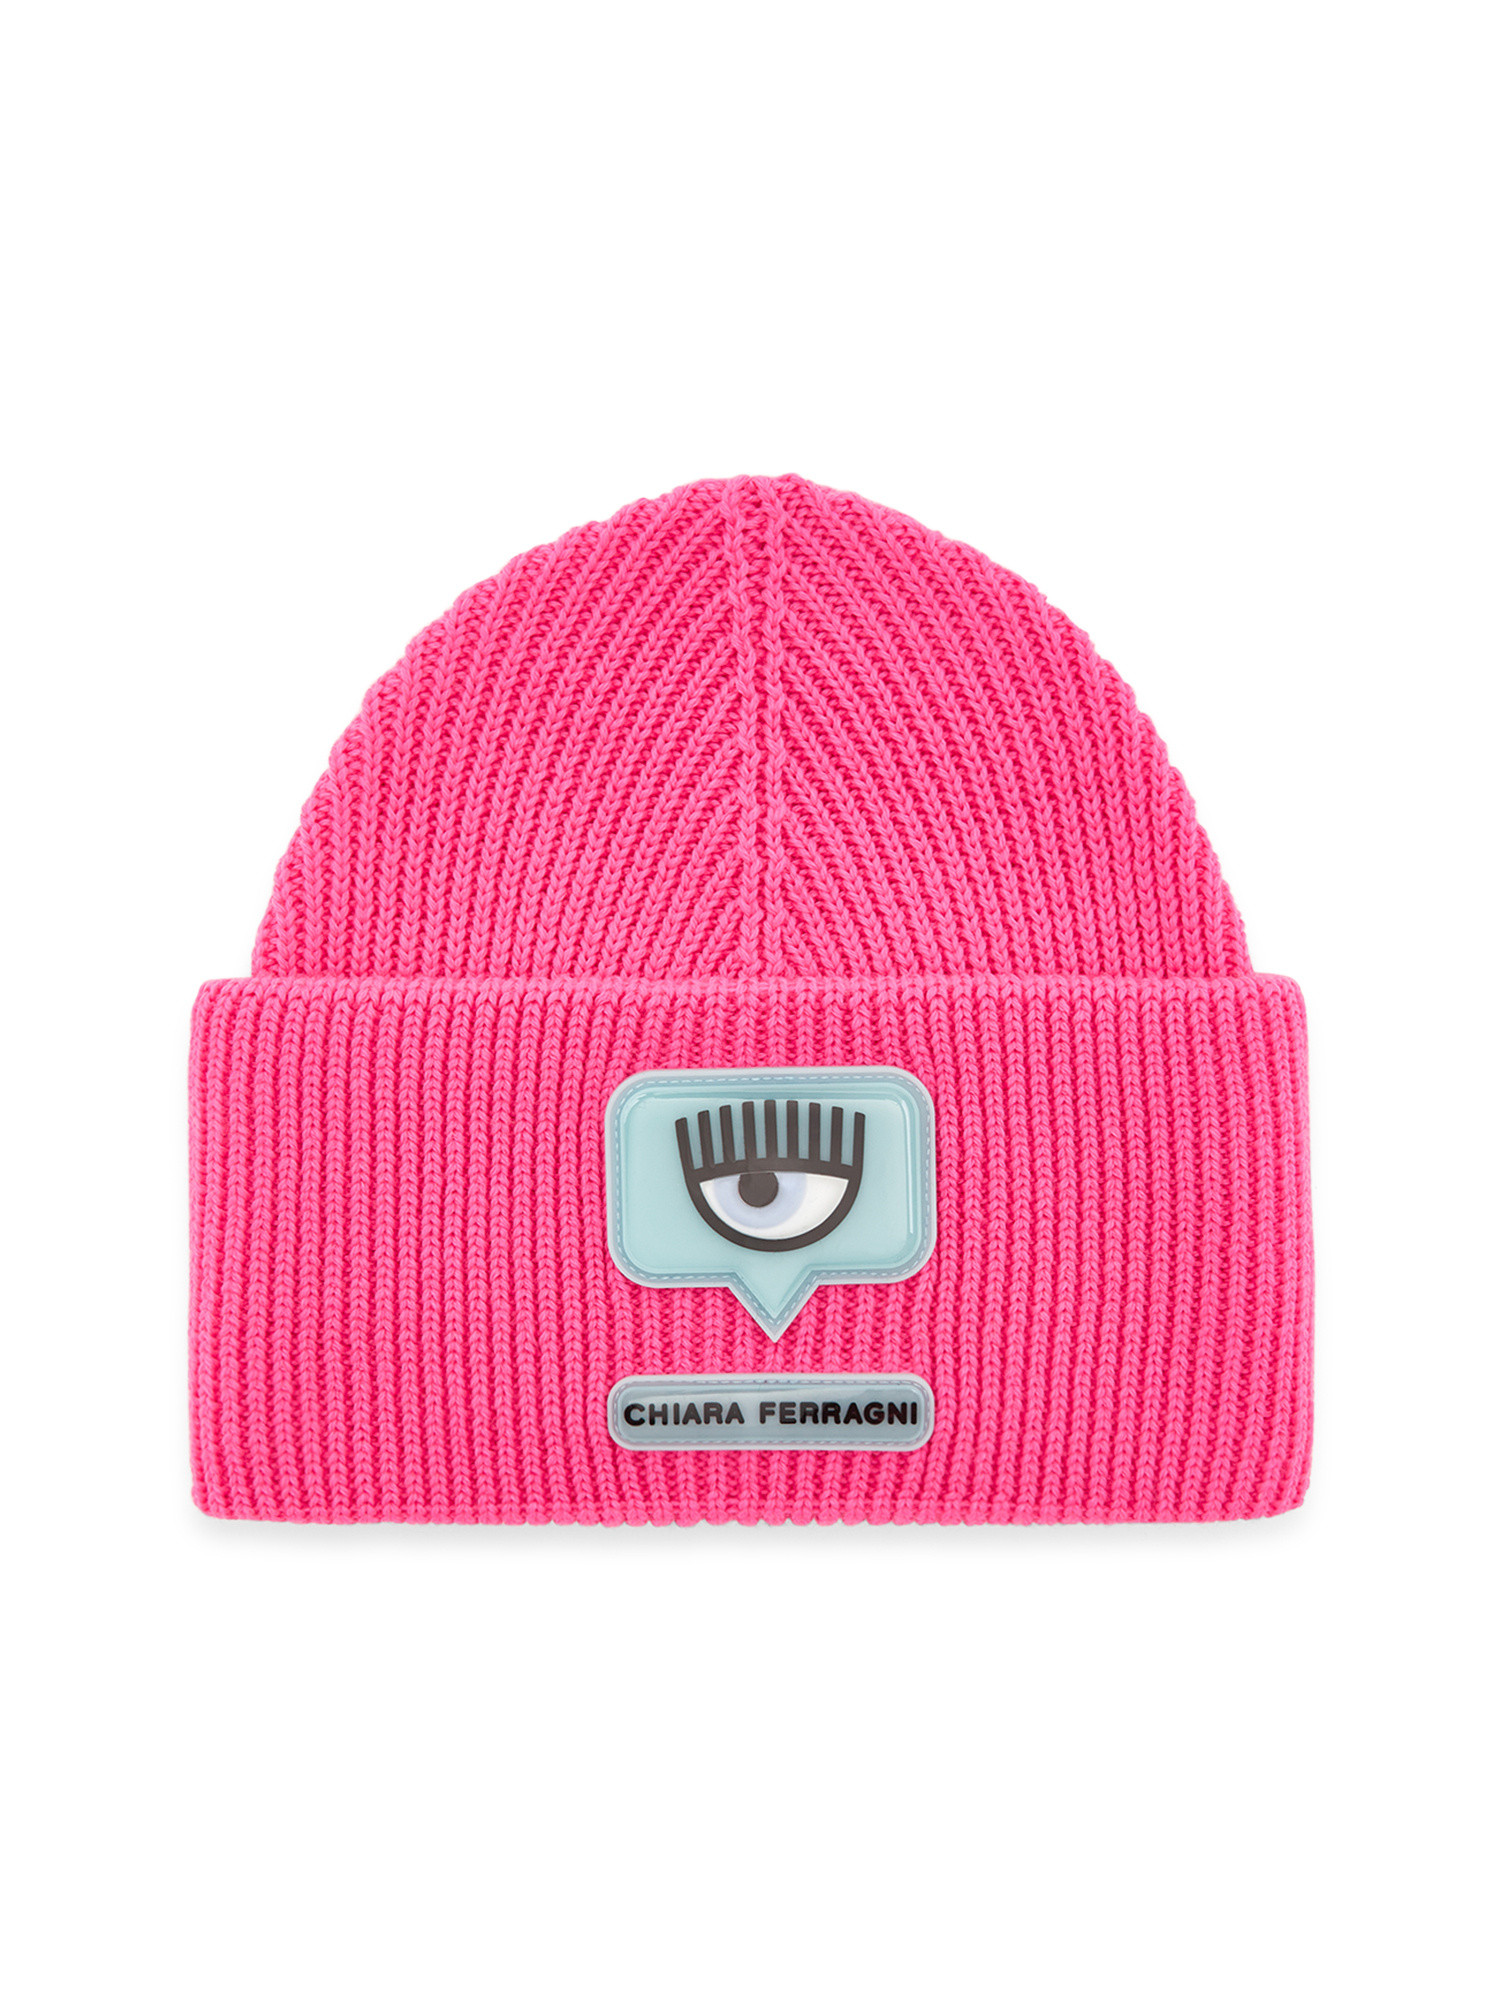 Chiara Ferragni - Beanie hat with Eyelike logo, Pink Fuchsia, large image number 0